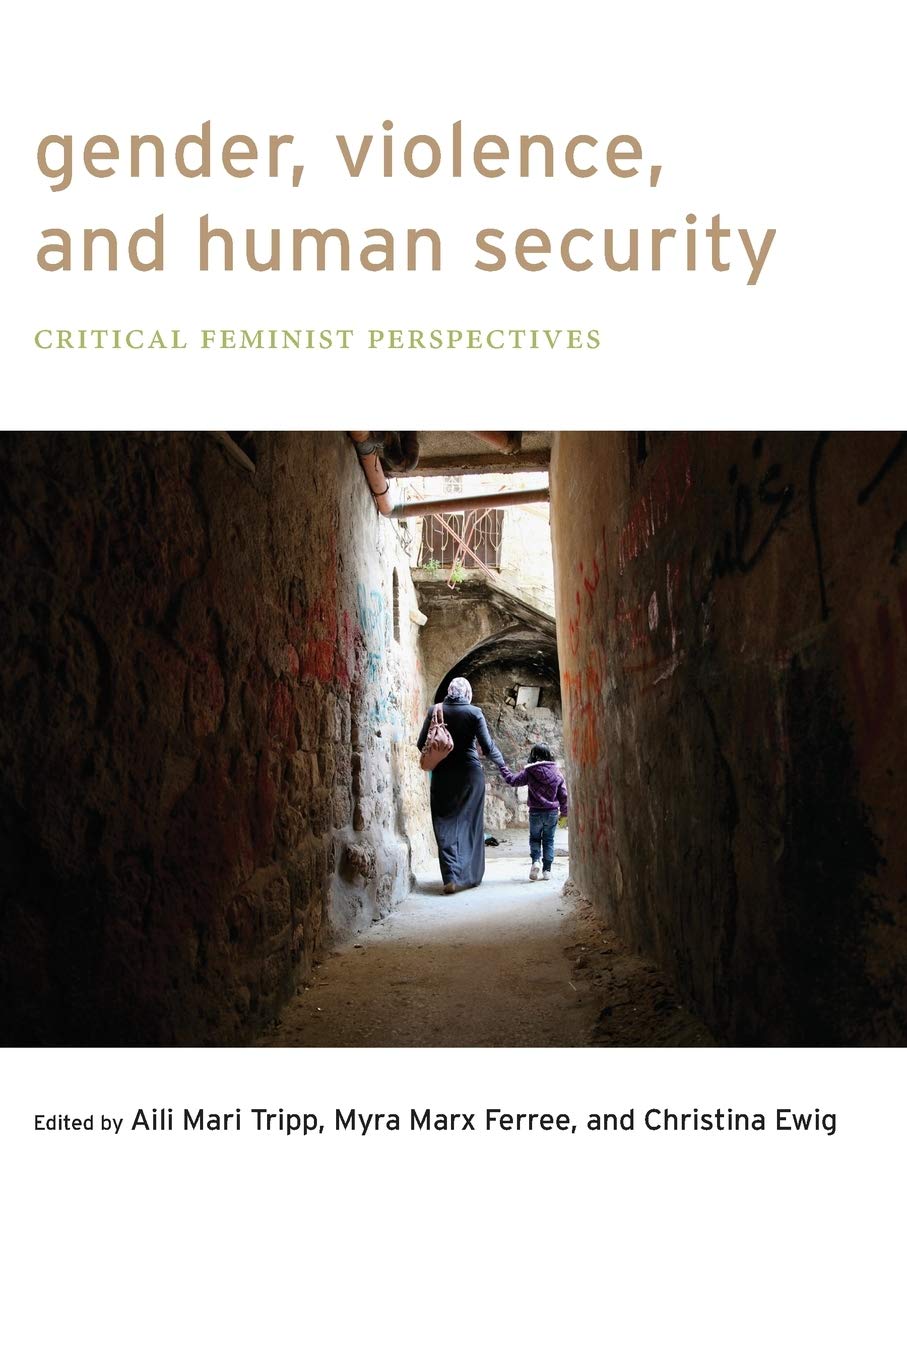 Imagen de portada del libro Gender, violence and human security